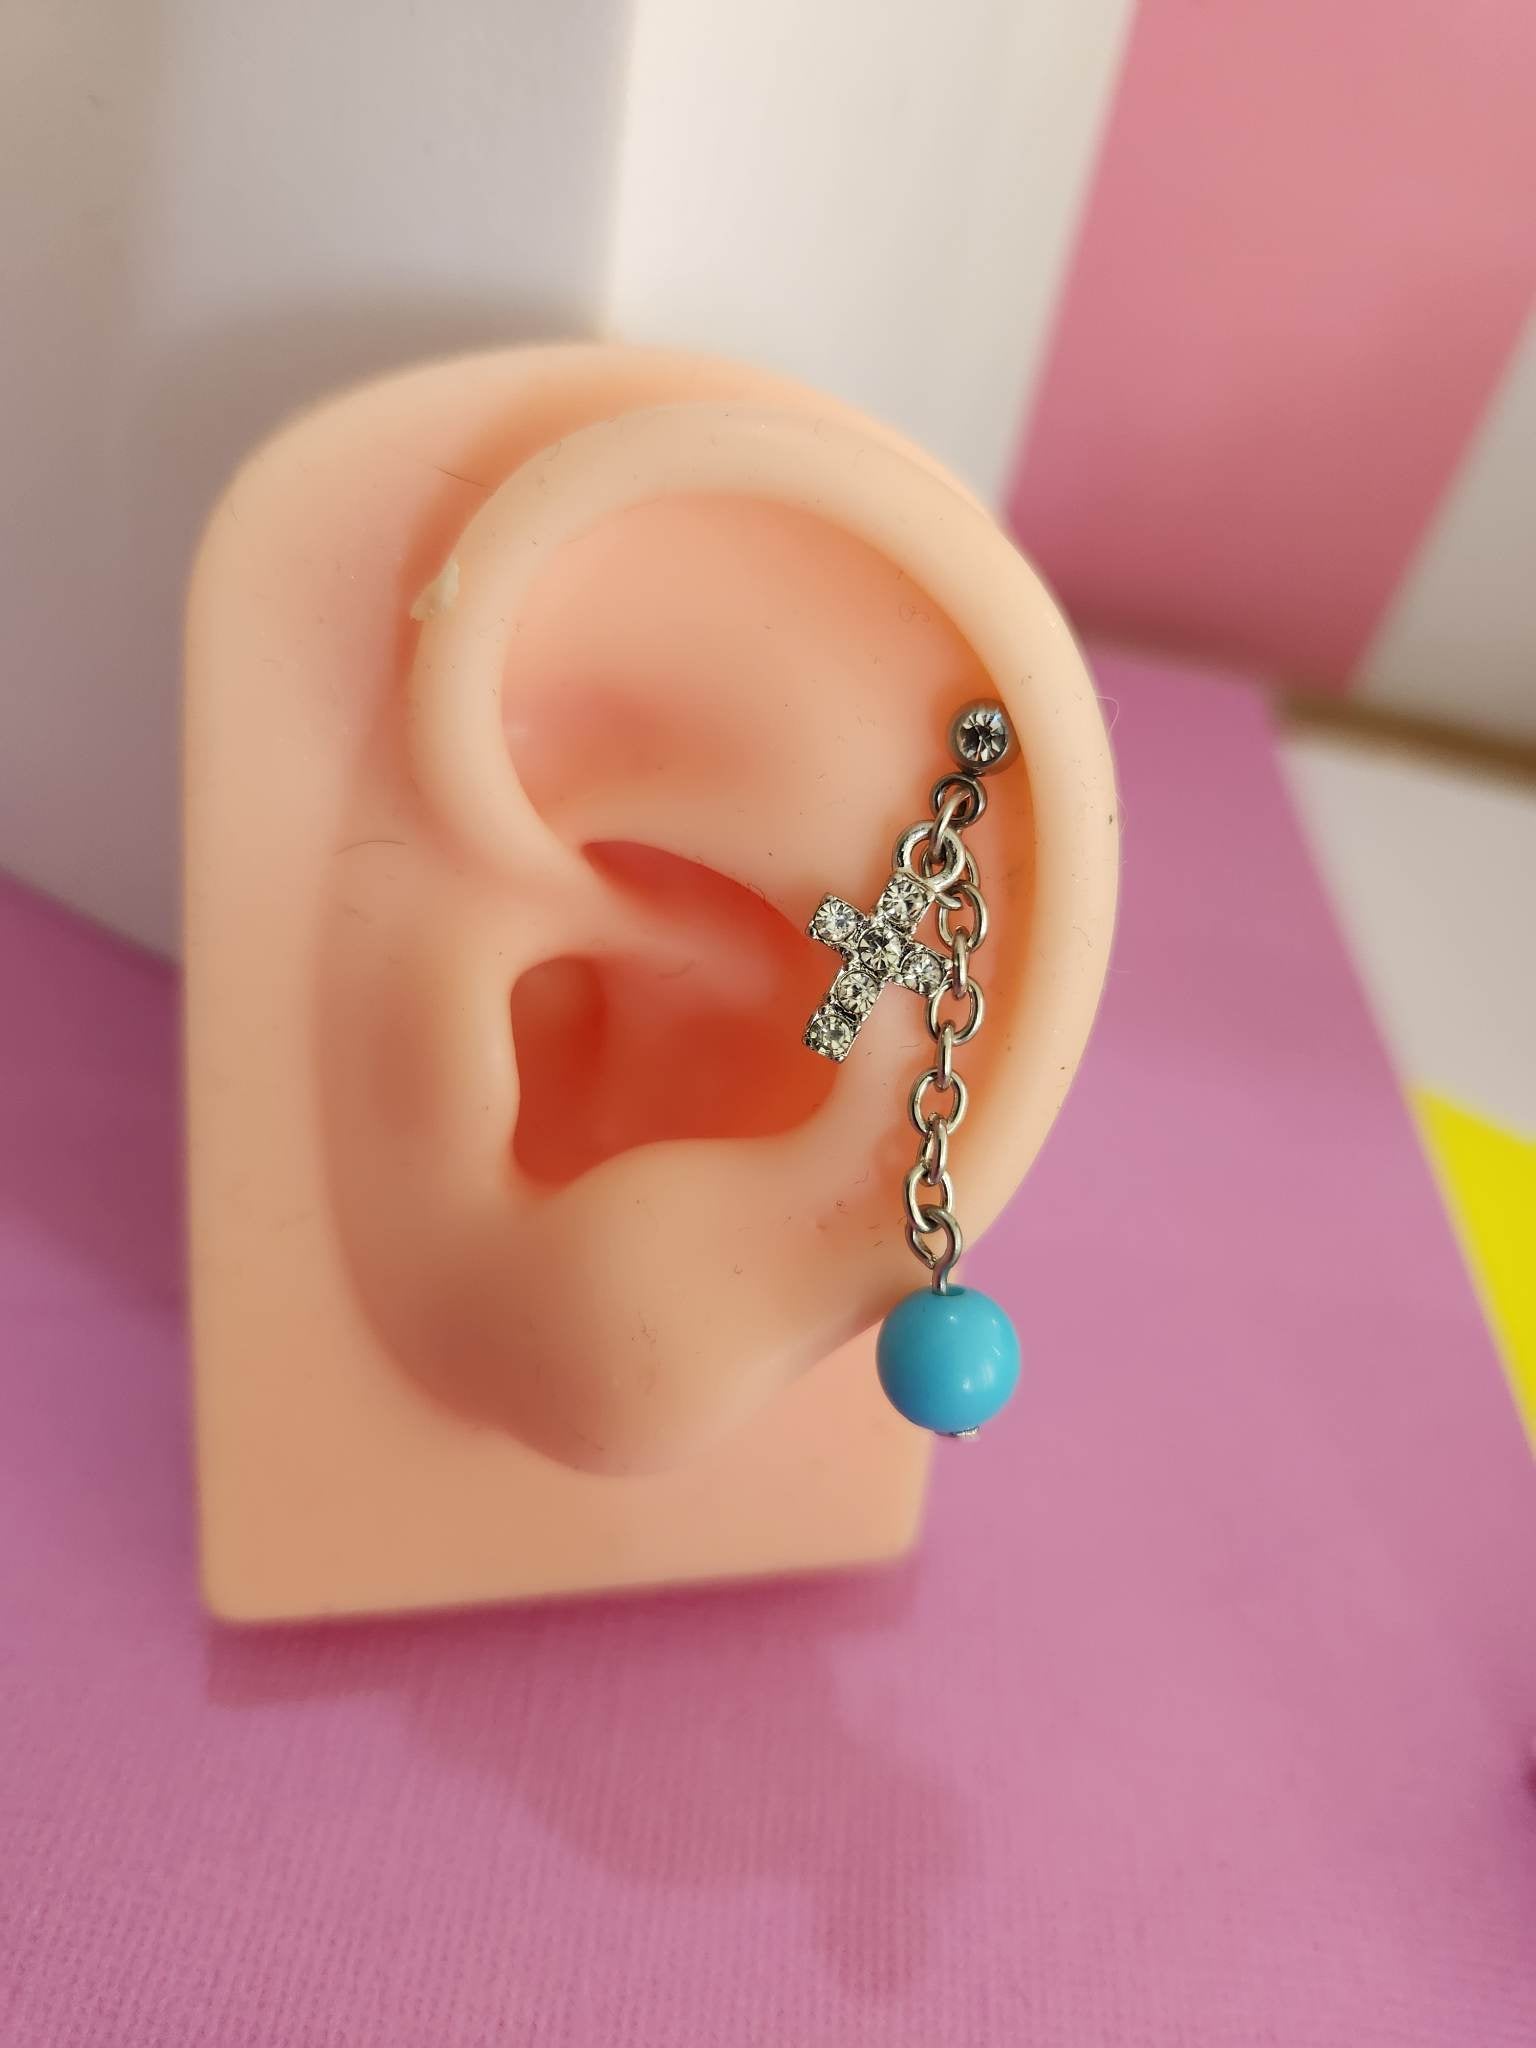 Cross Dangle Chain Ear Piercing Tragus Cartilage Flat Rook Earrings - Pierced n Proud